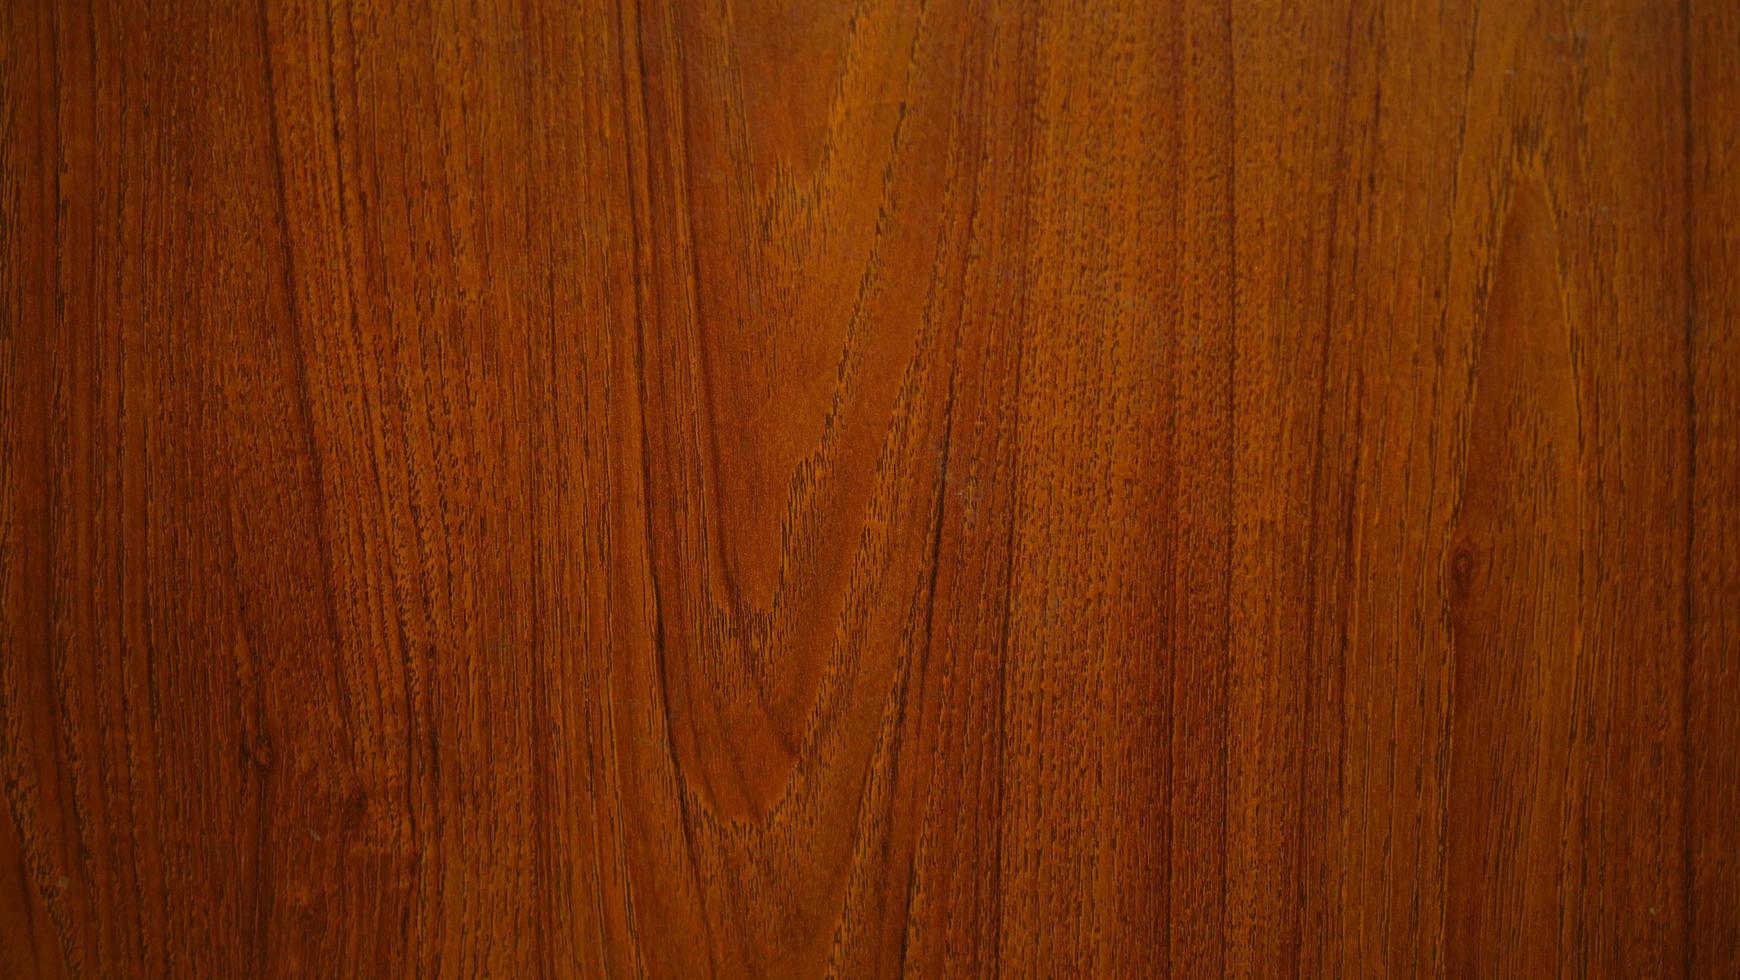 textura de grão de madeira para fazer plano de fundo ou papel de parede. padrão de grão de madeira, tom vermelho e preto. padrão de madeira de teca vermelha. foto